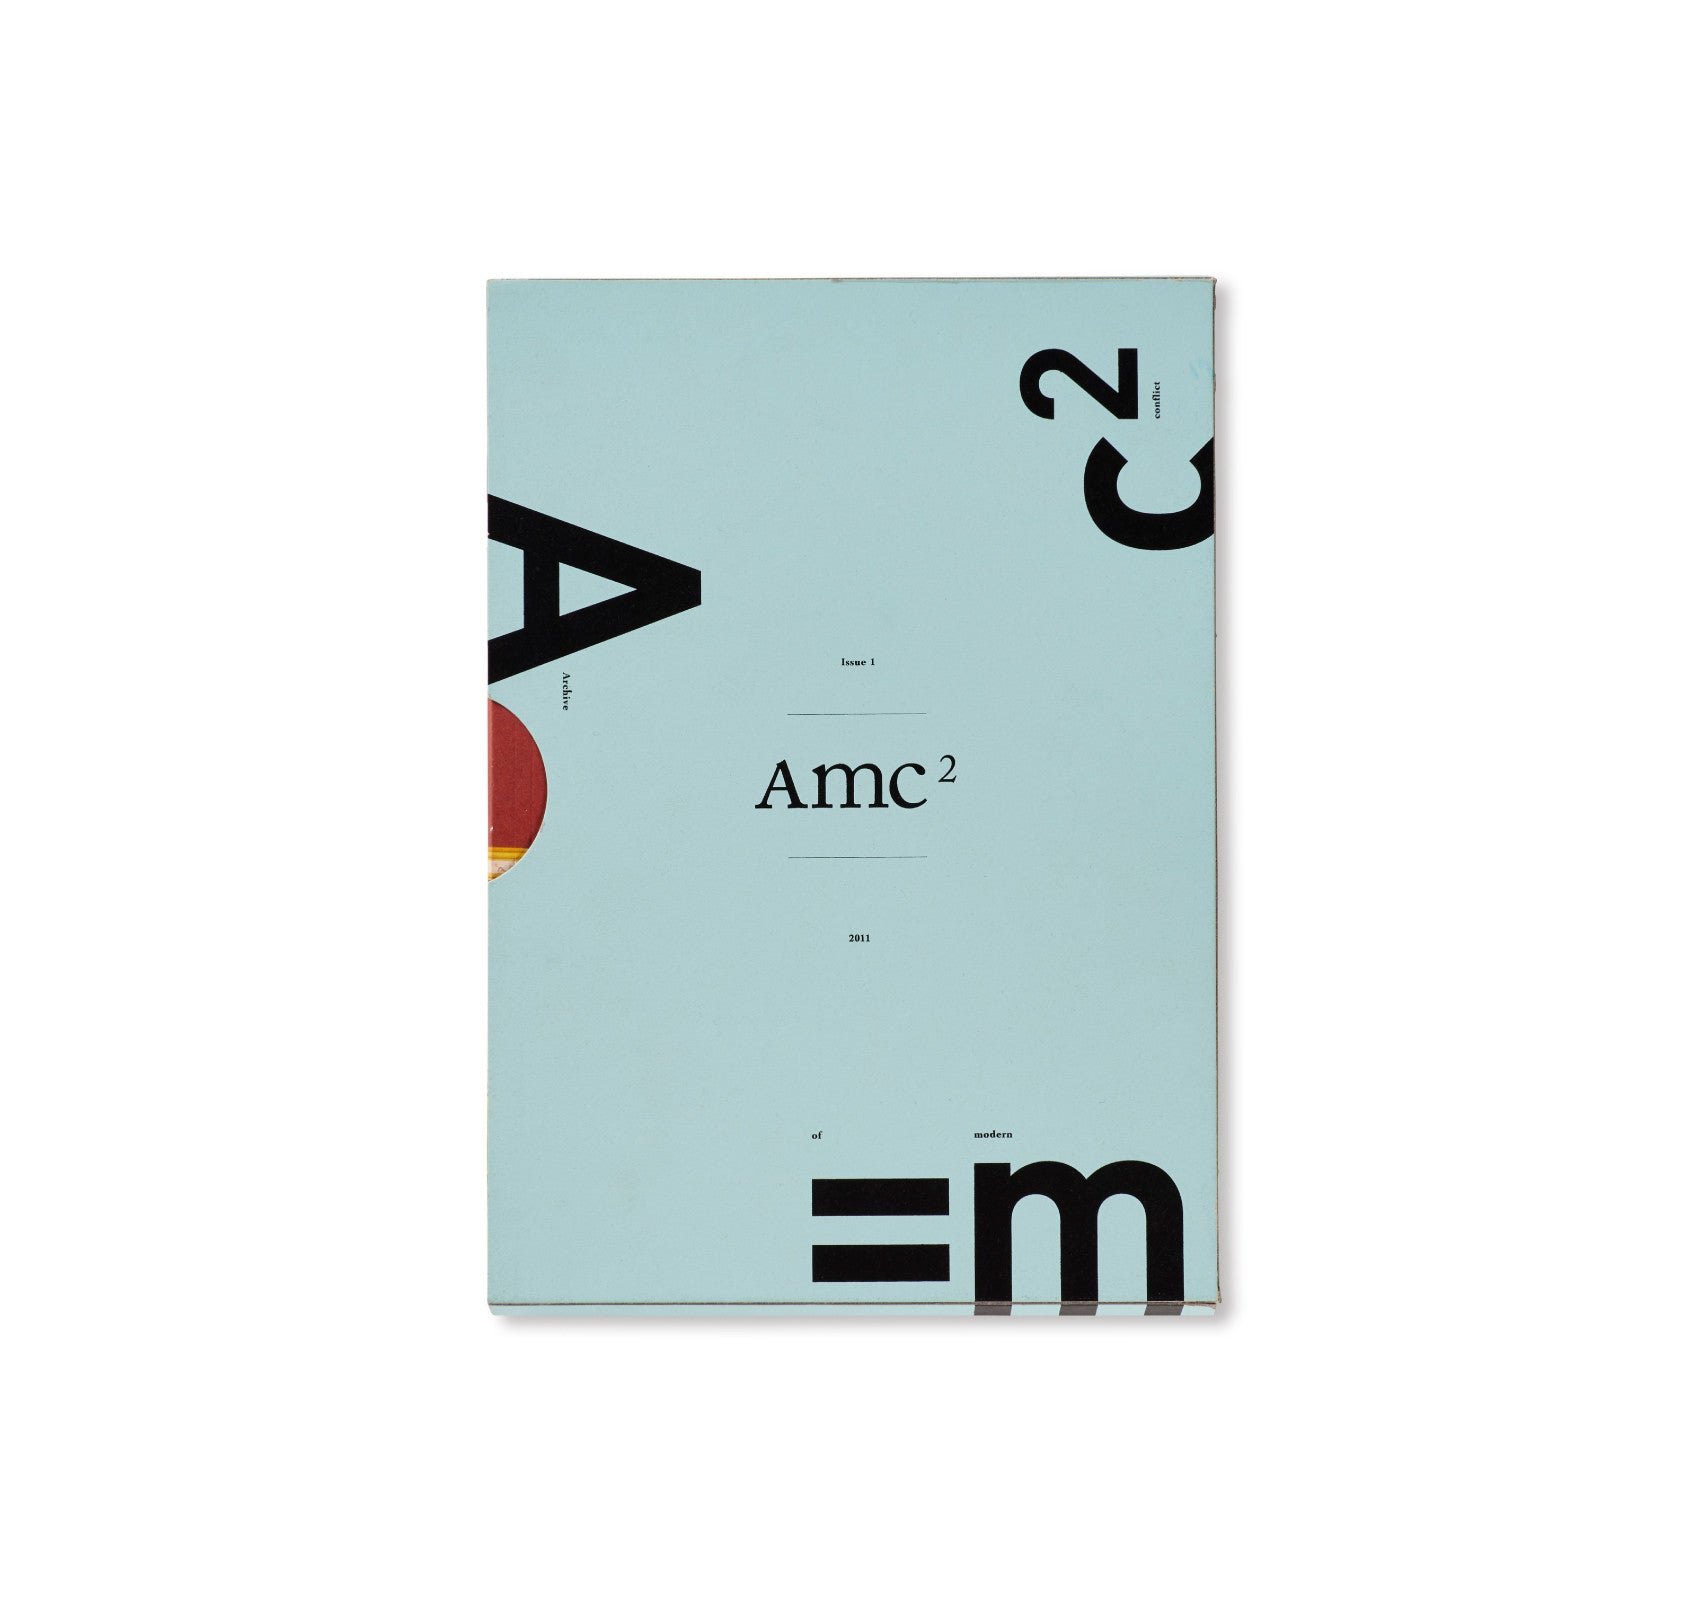 AMC2 JOURNAL ISSUE 1 – twelvebooks